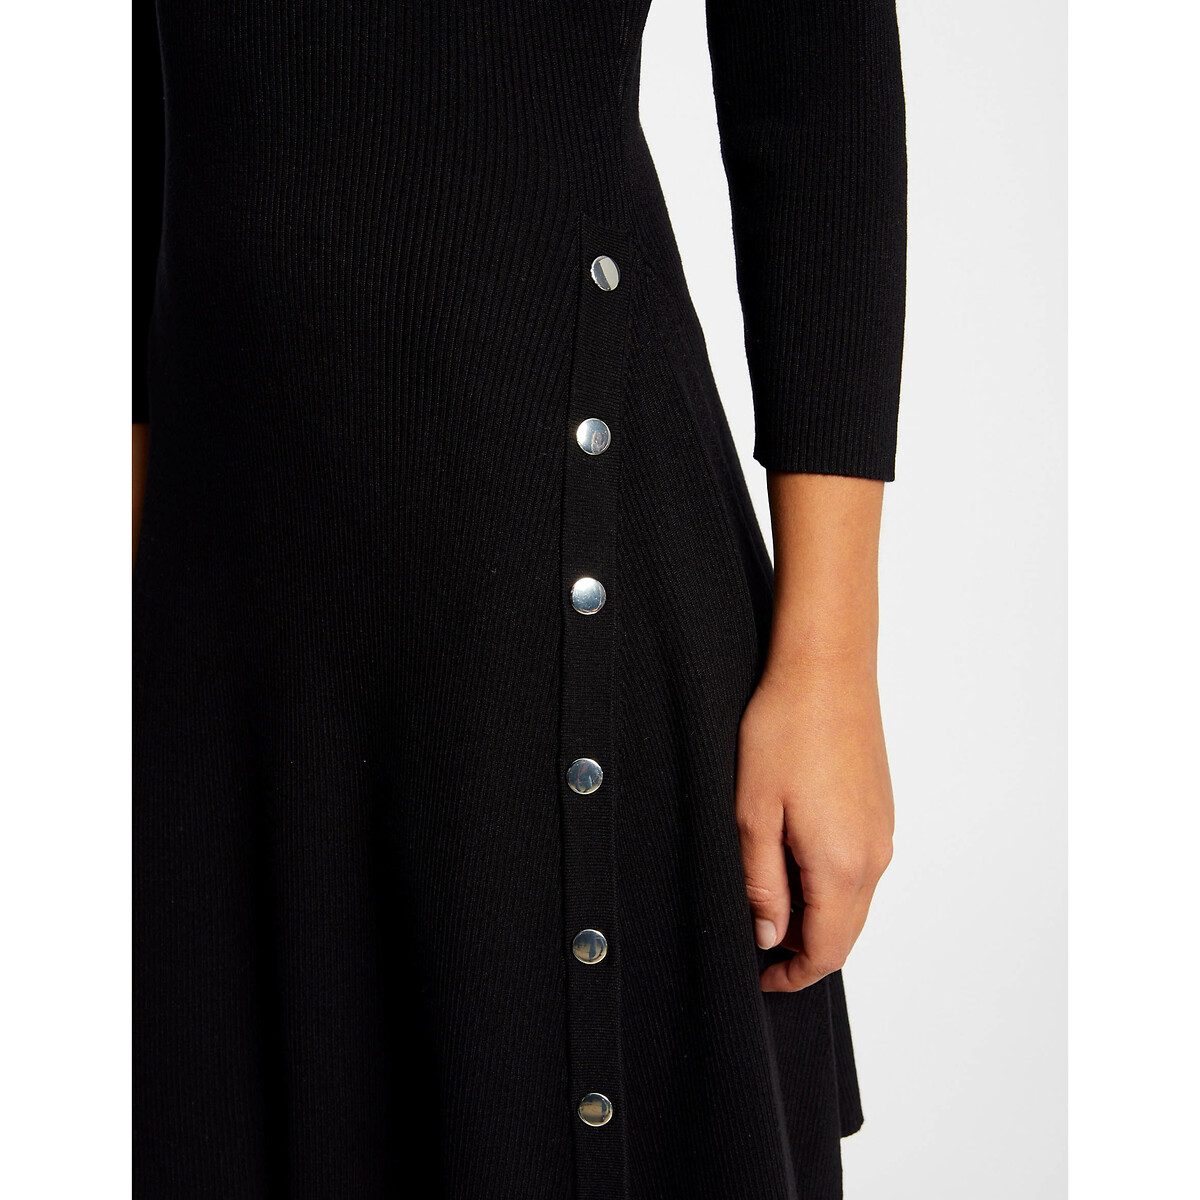 Платье-пуловер В форме трапеции вставки с пуговицами L черный LaRedoute, размер L - фото 3